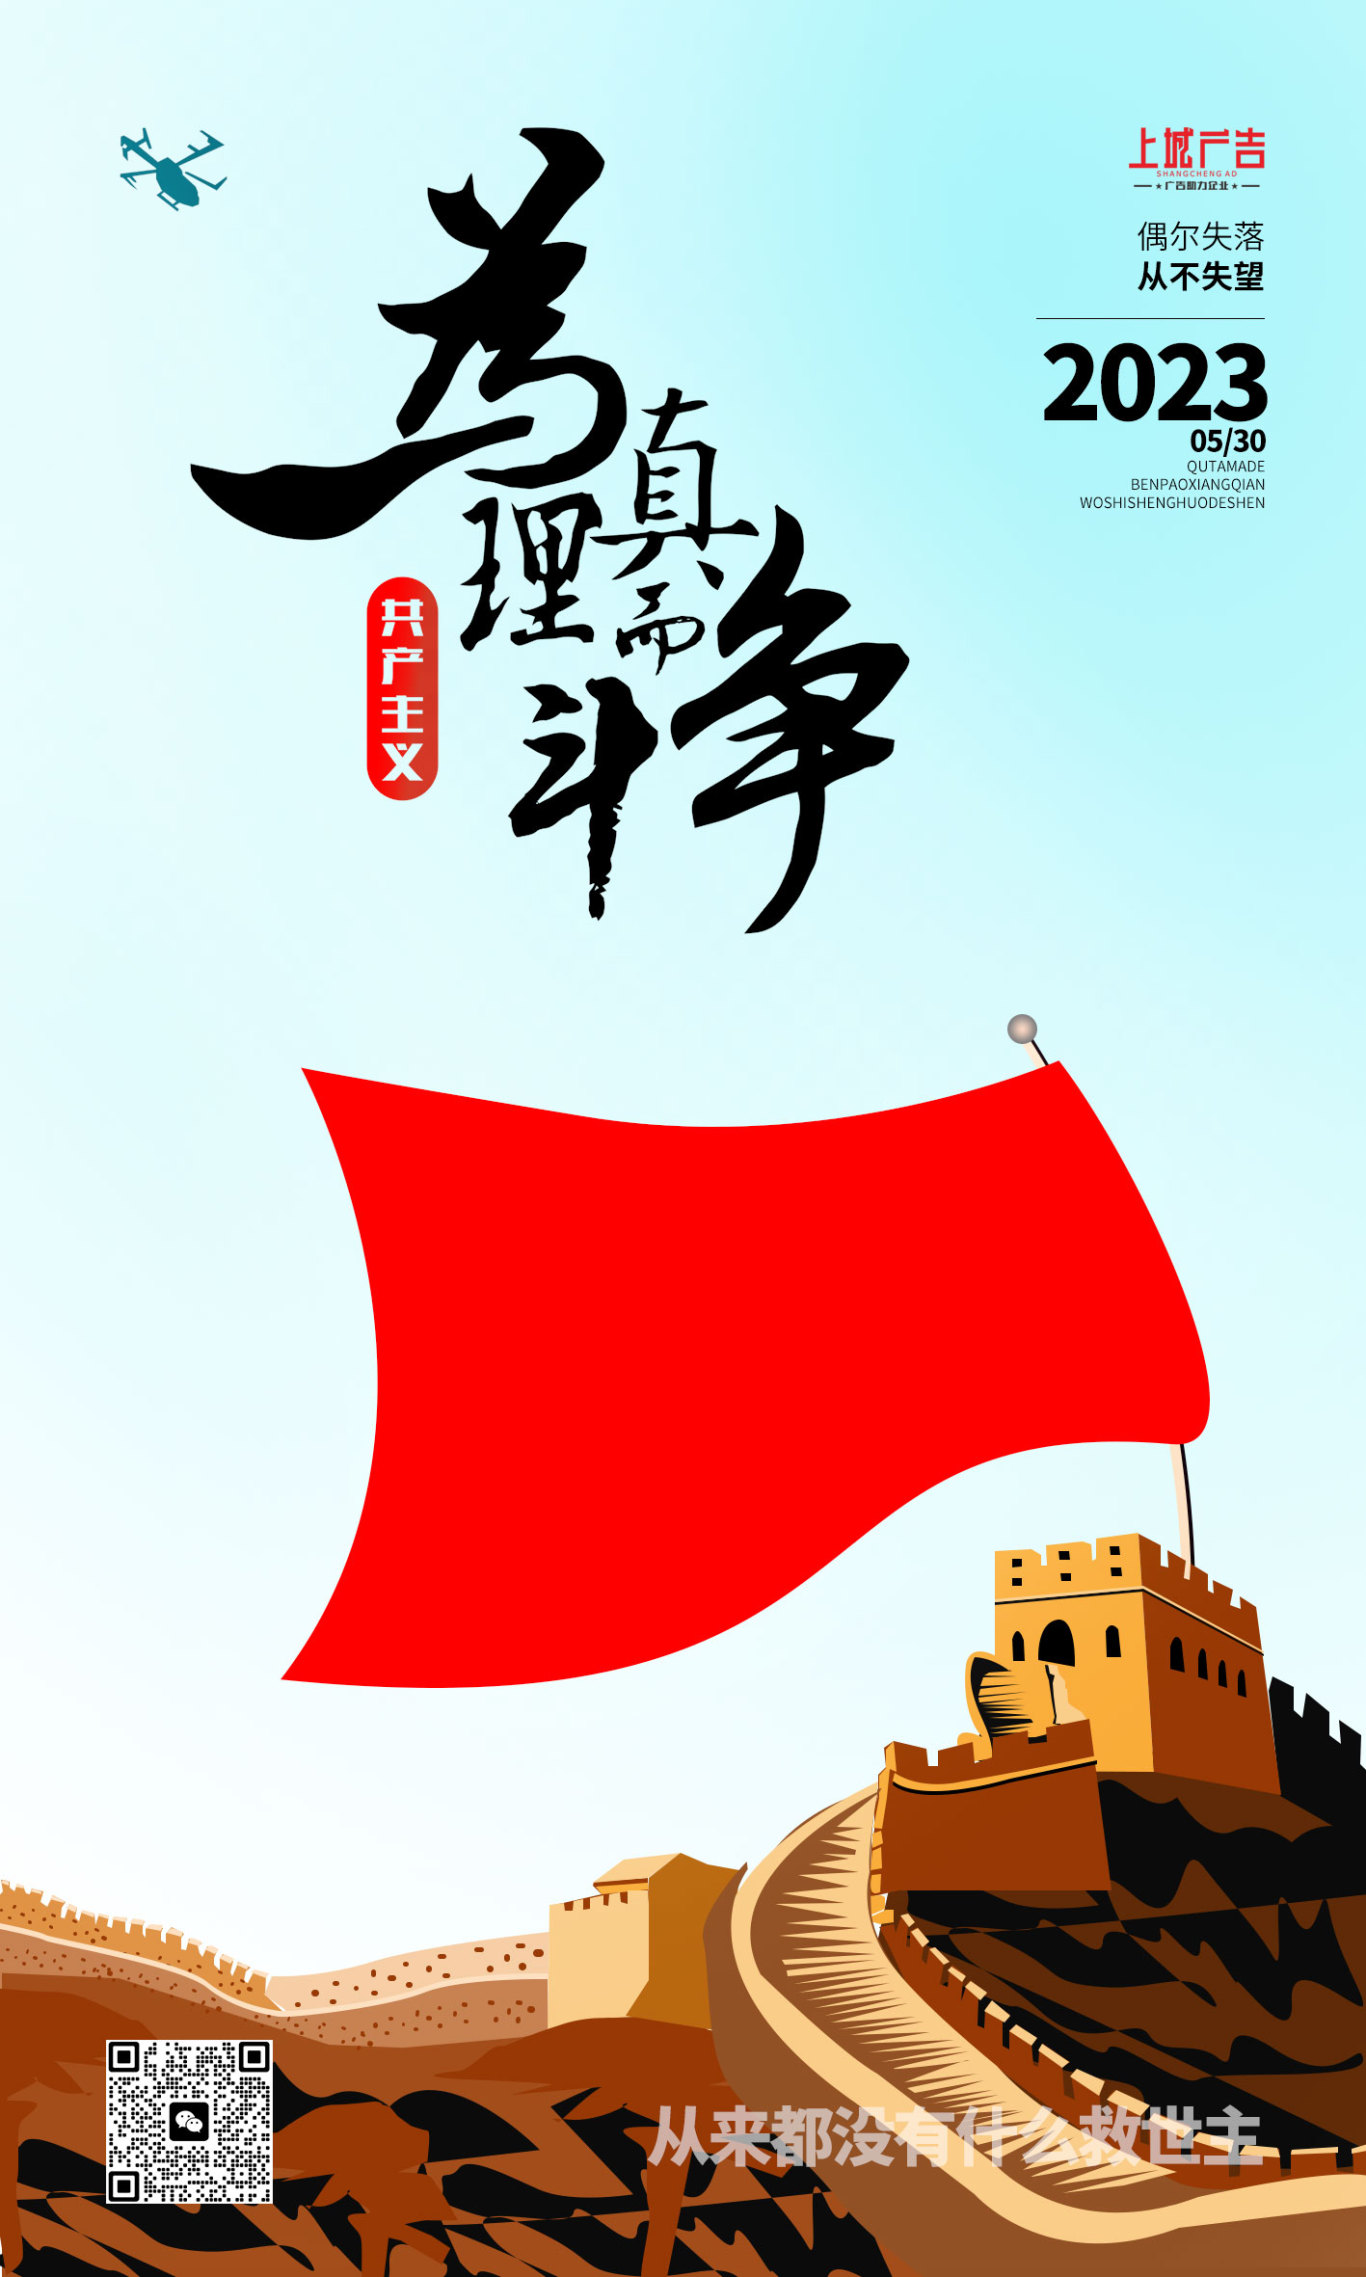 上城广告图1